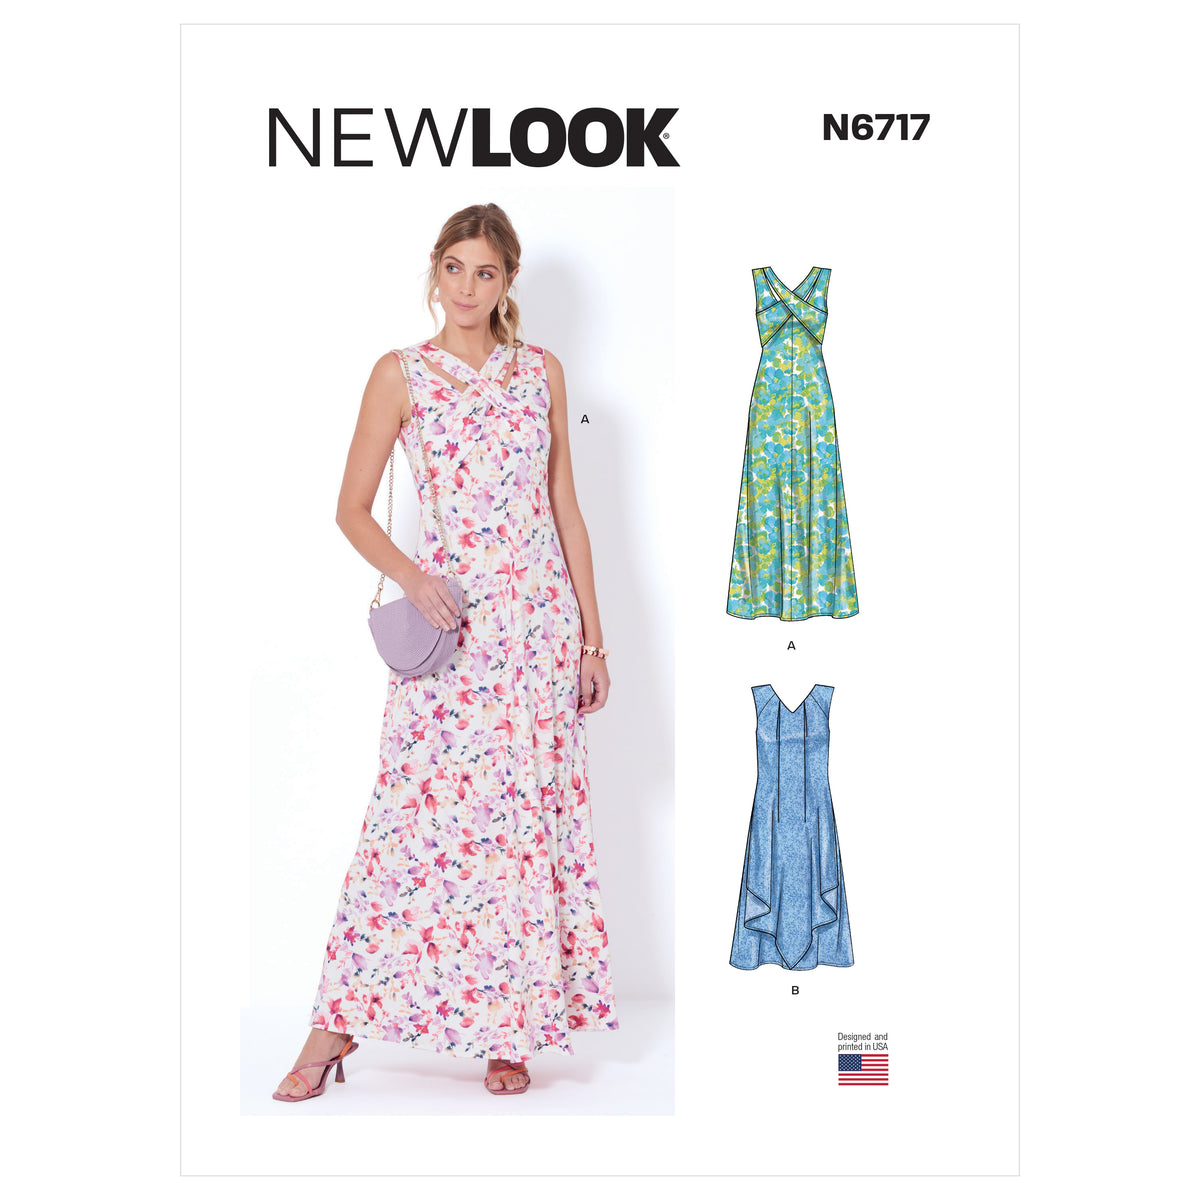 New Look Sewing Pattern 6717 - Pound Fabrics